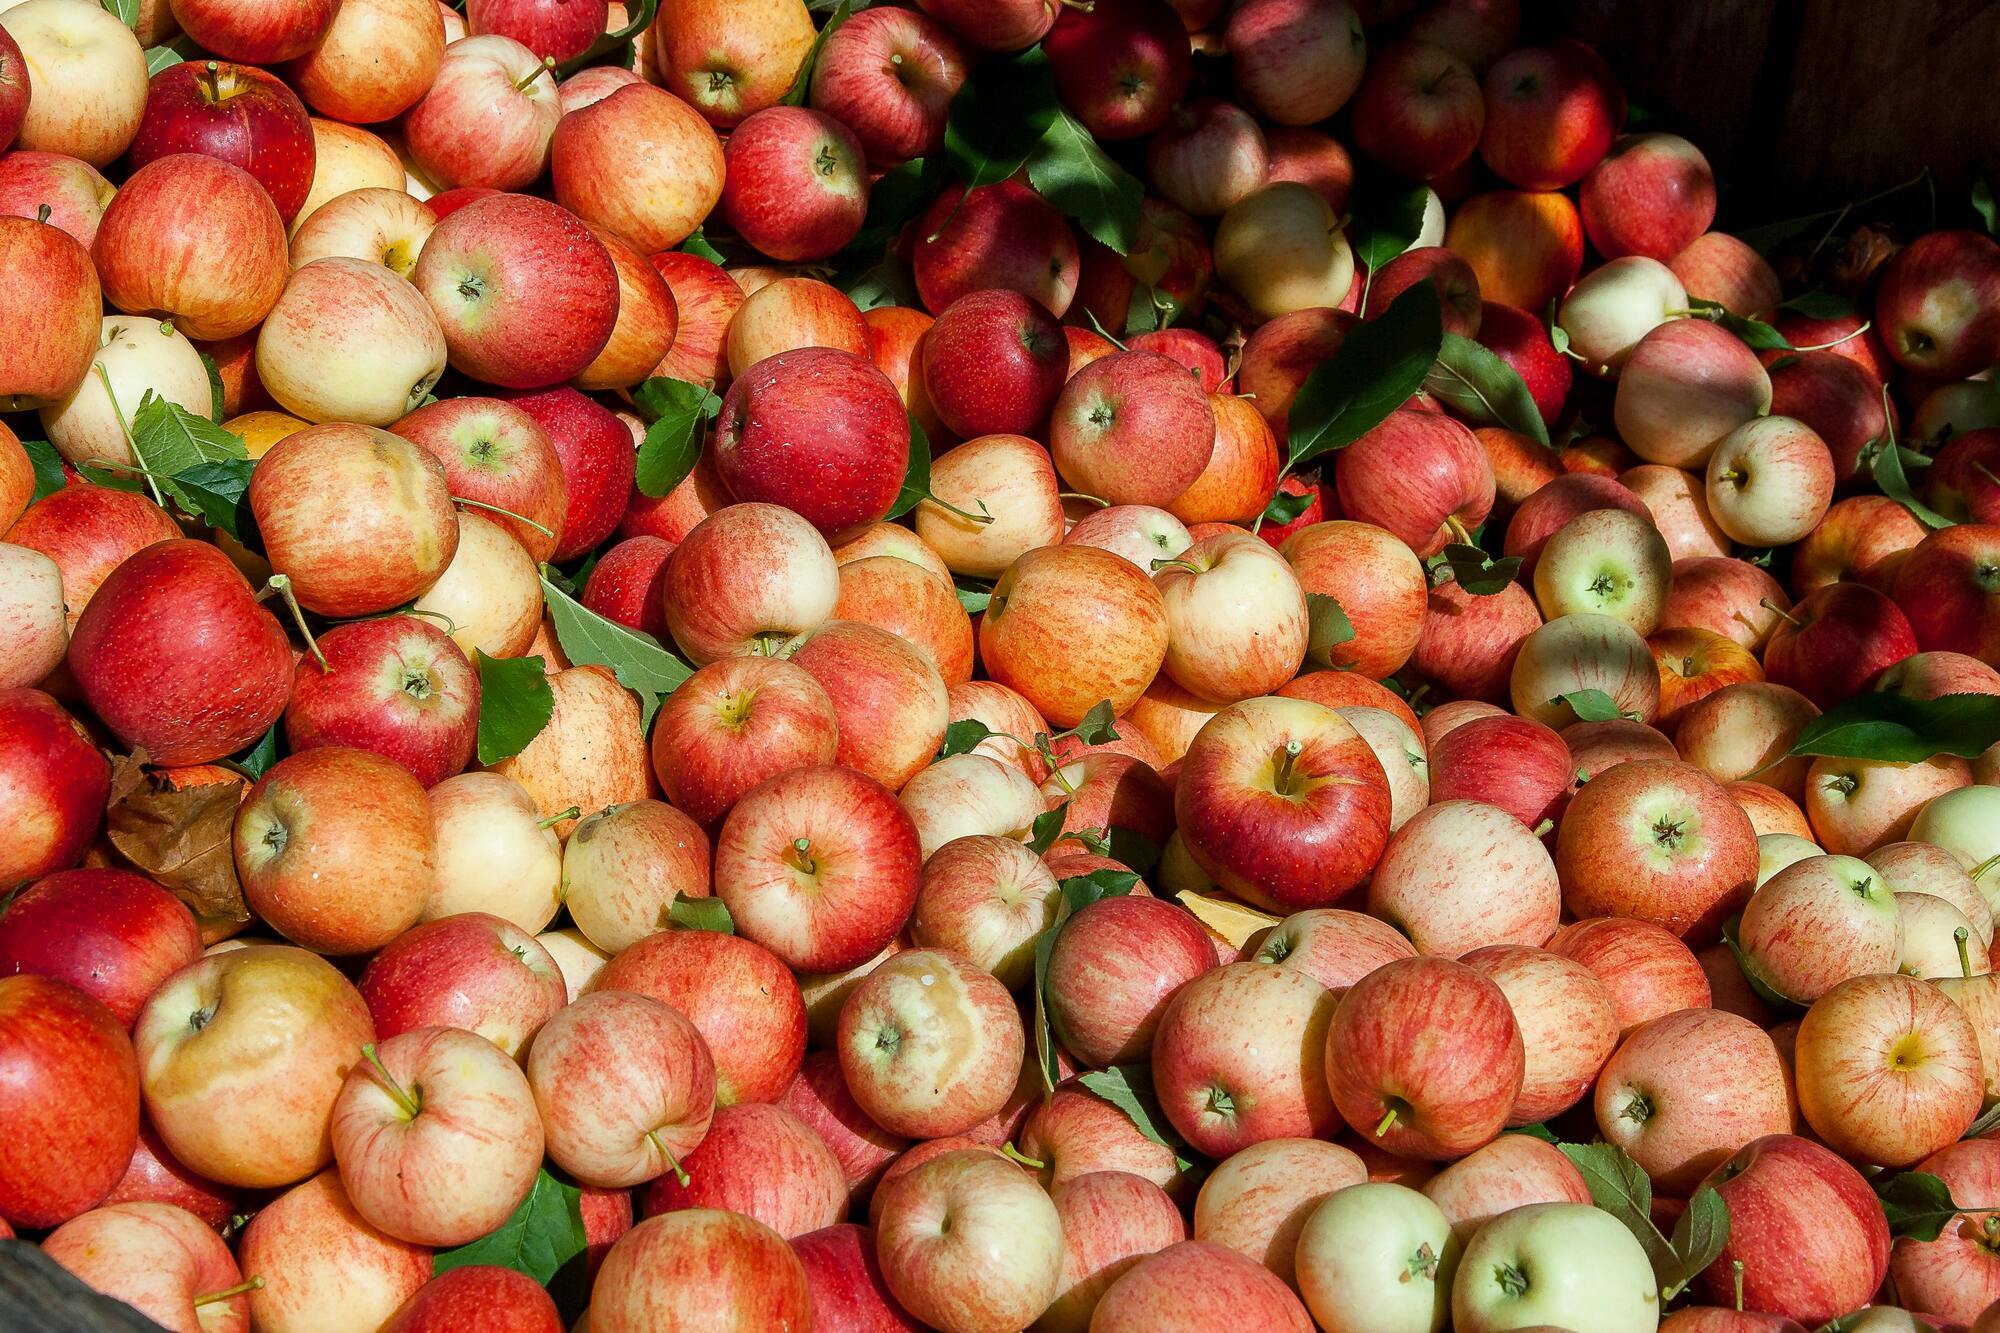 Один лайфхак родом из 1700-х годов поможет хранить яблоки гораздо дольше